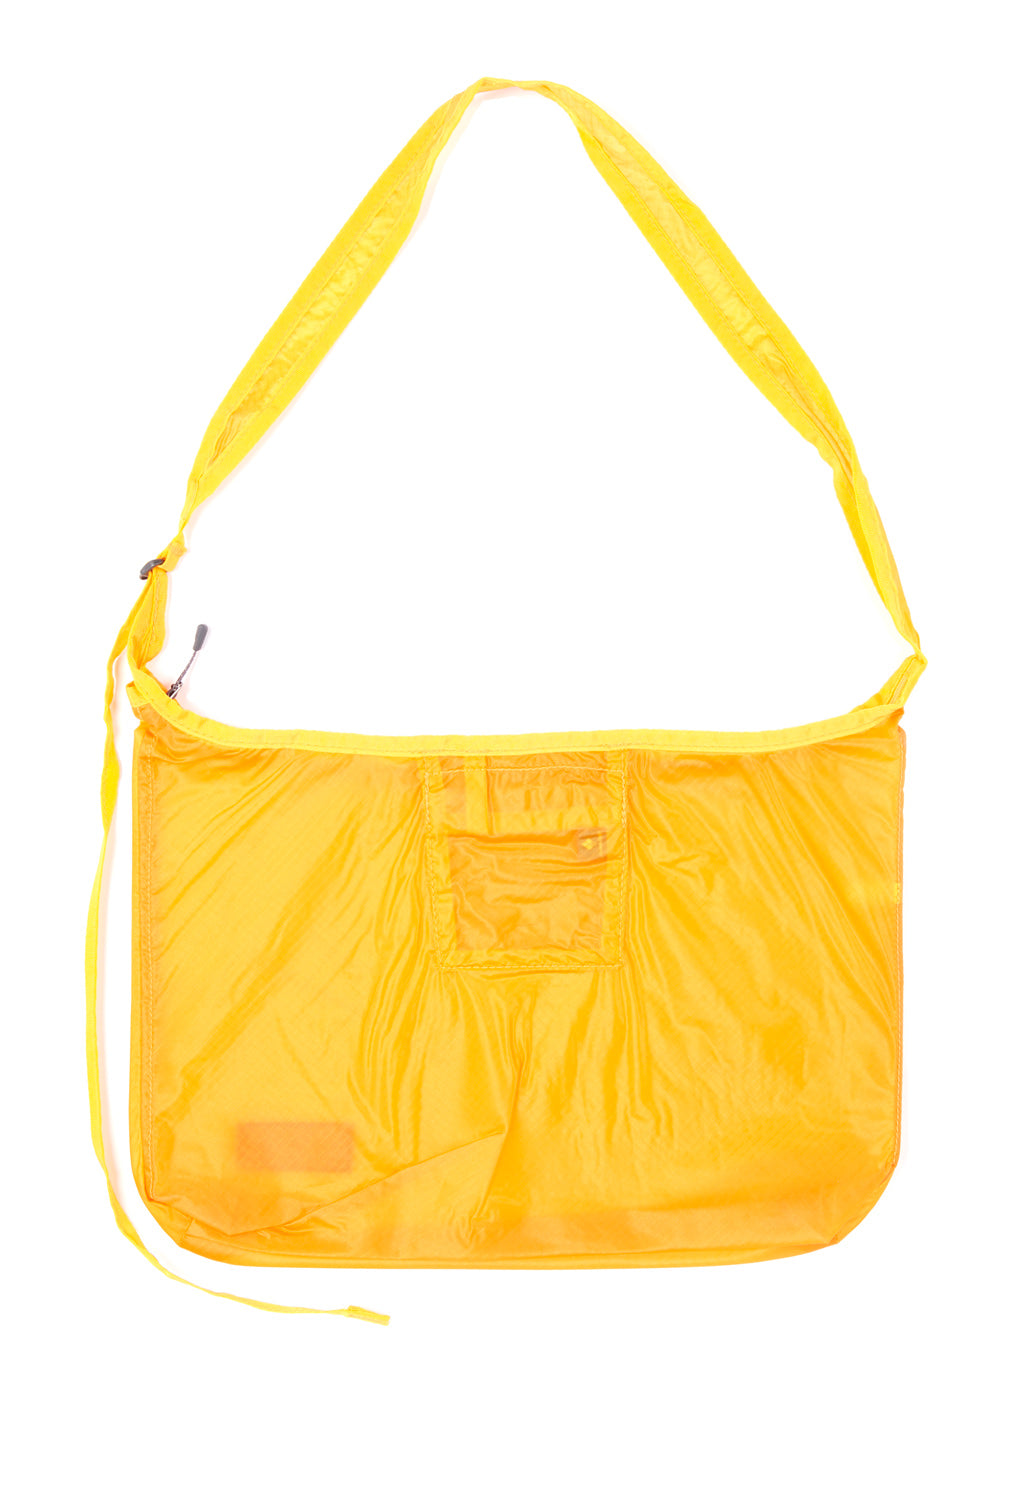 Montbell U.L. Mono Shoulder Bag Large - Marigold